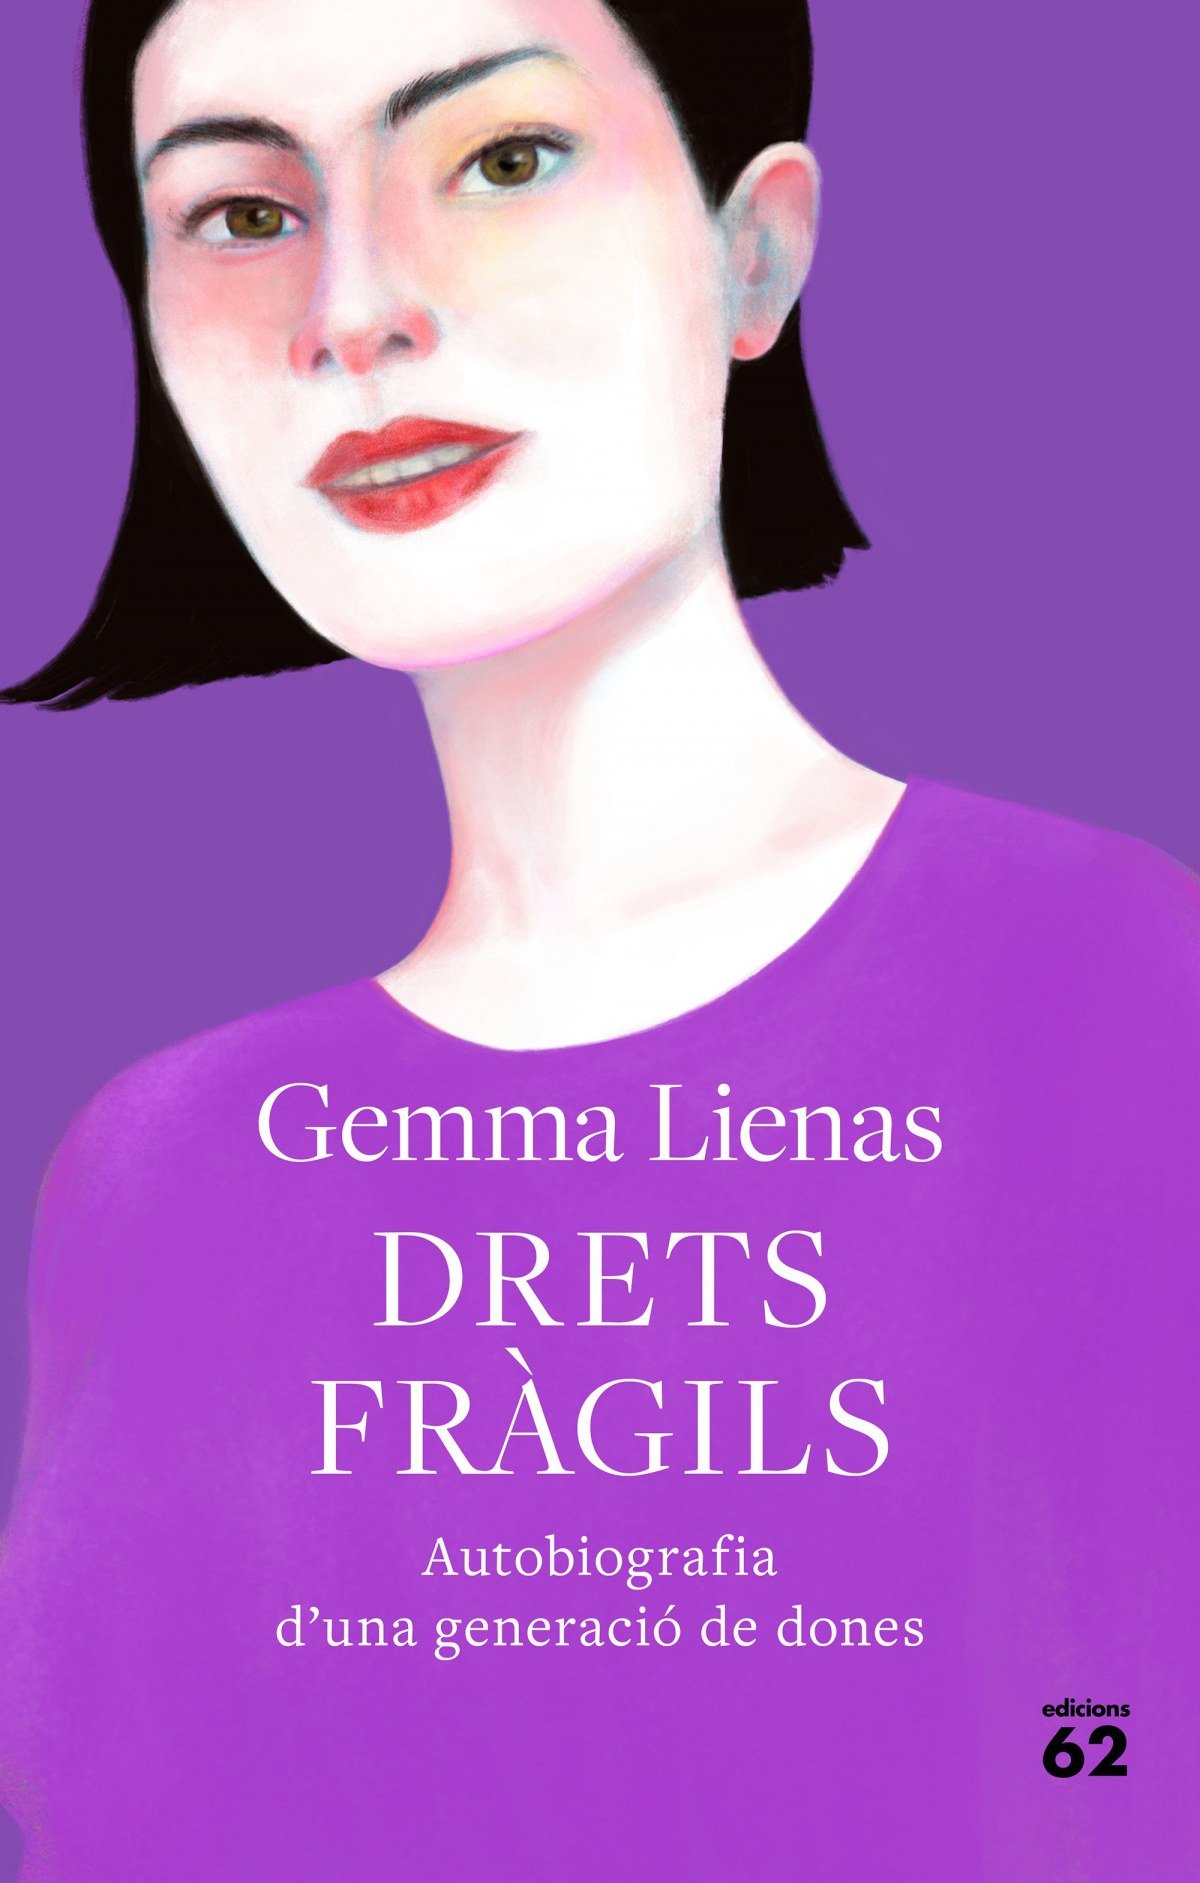 DRETS FRÀGILS. Autobiografia d'una generació de dones